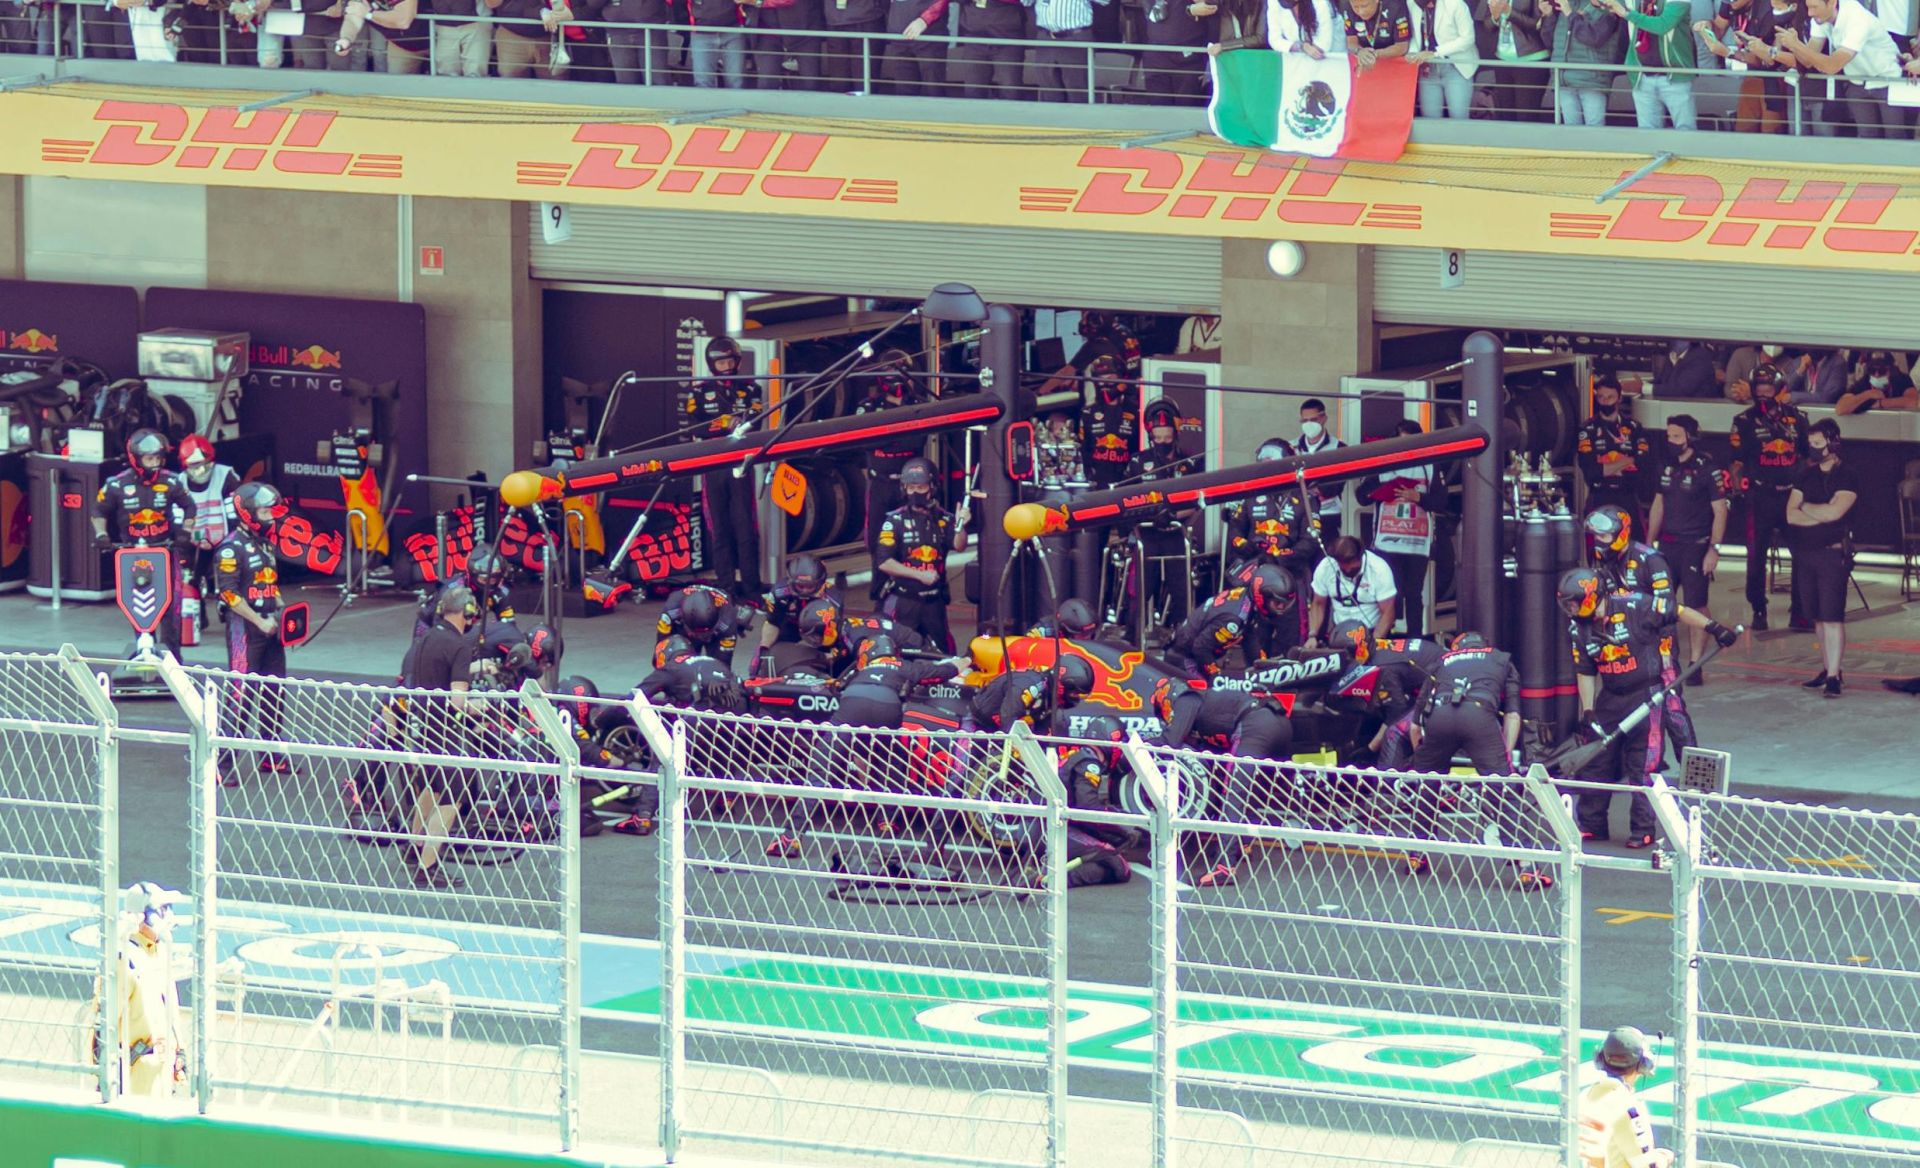 D. Ricciardo Silverstoune apgadino naują „Red Bull“ bolidą